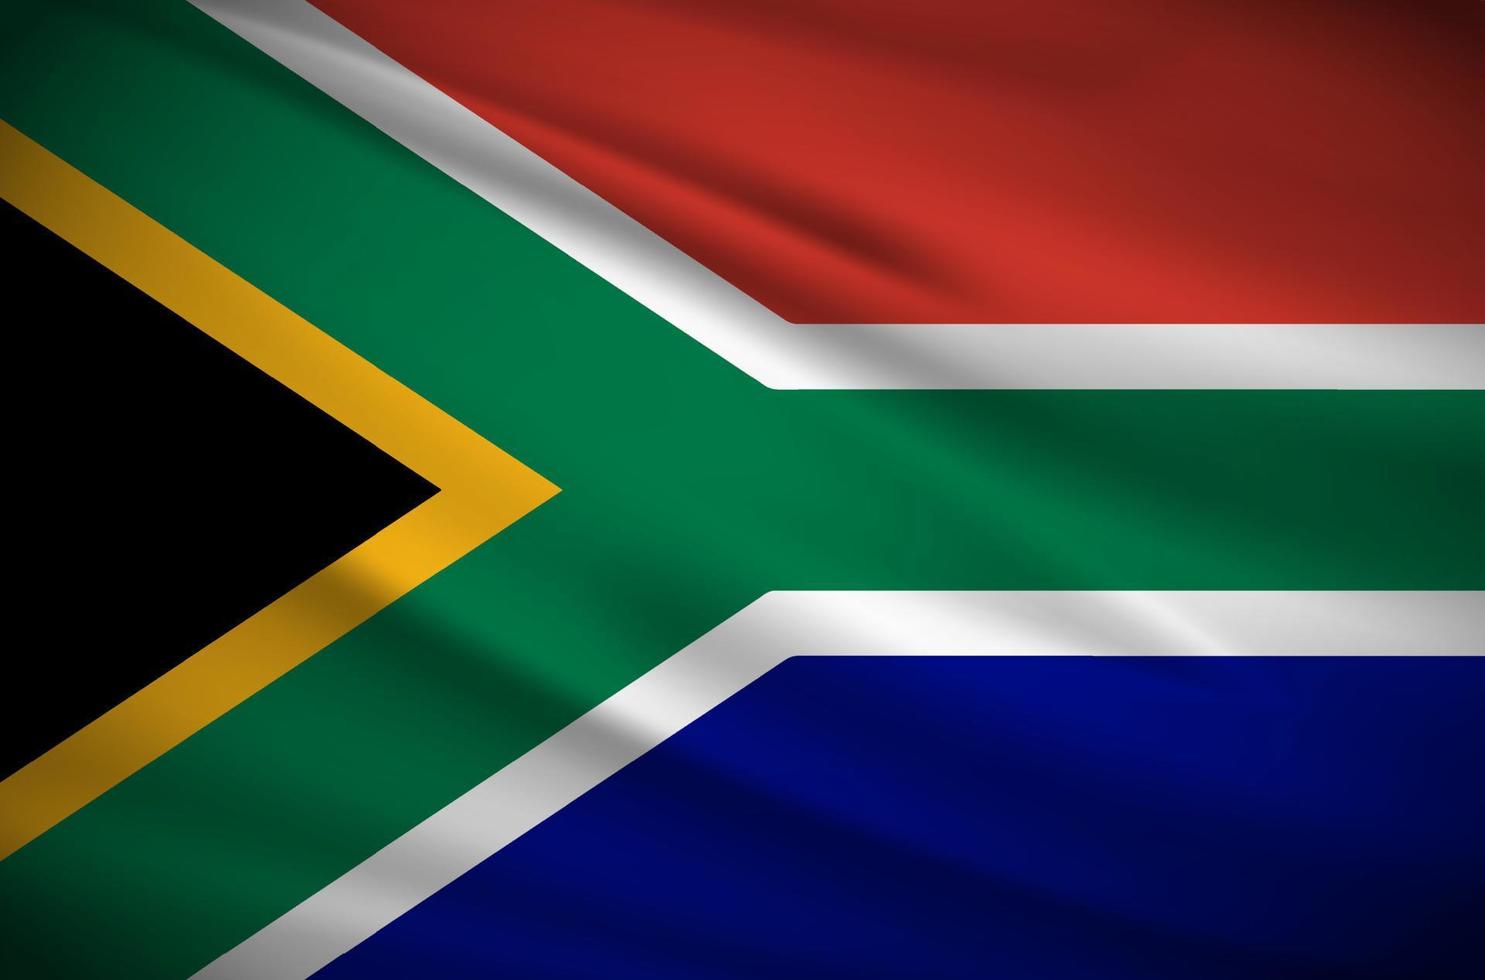 vettore ondulato realistico del fondo della bandiera del sud africa. illustrazione vettoriale del giorno dell'indipendenza del sud africa.